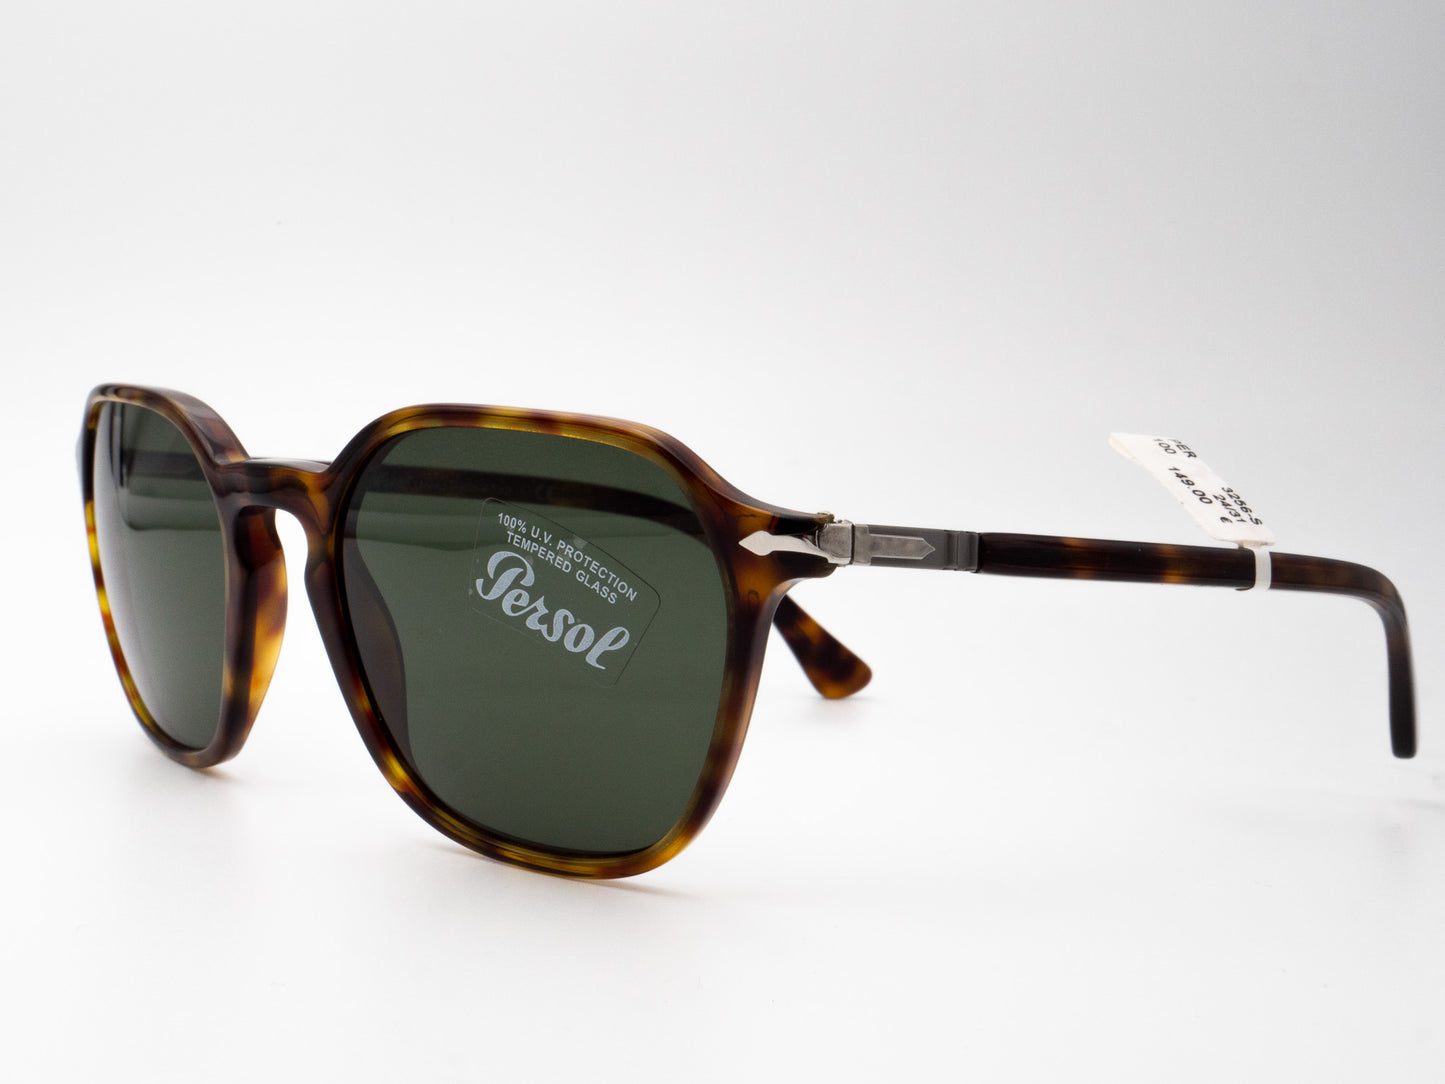 Persol Sonnenbrille Mod. 3256-S